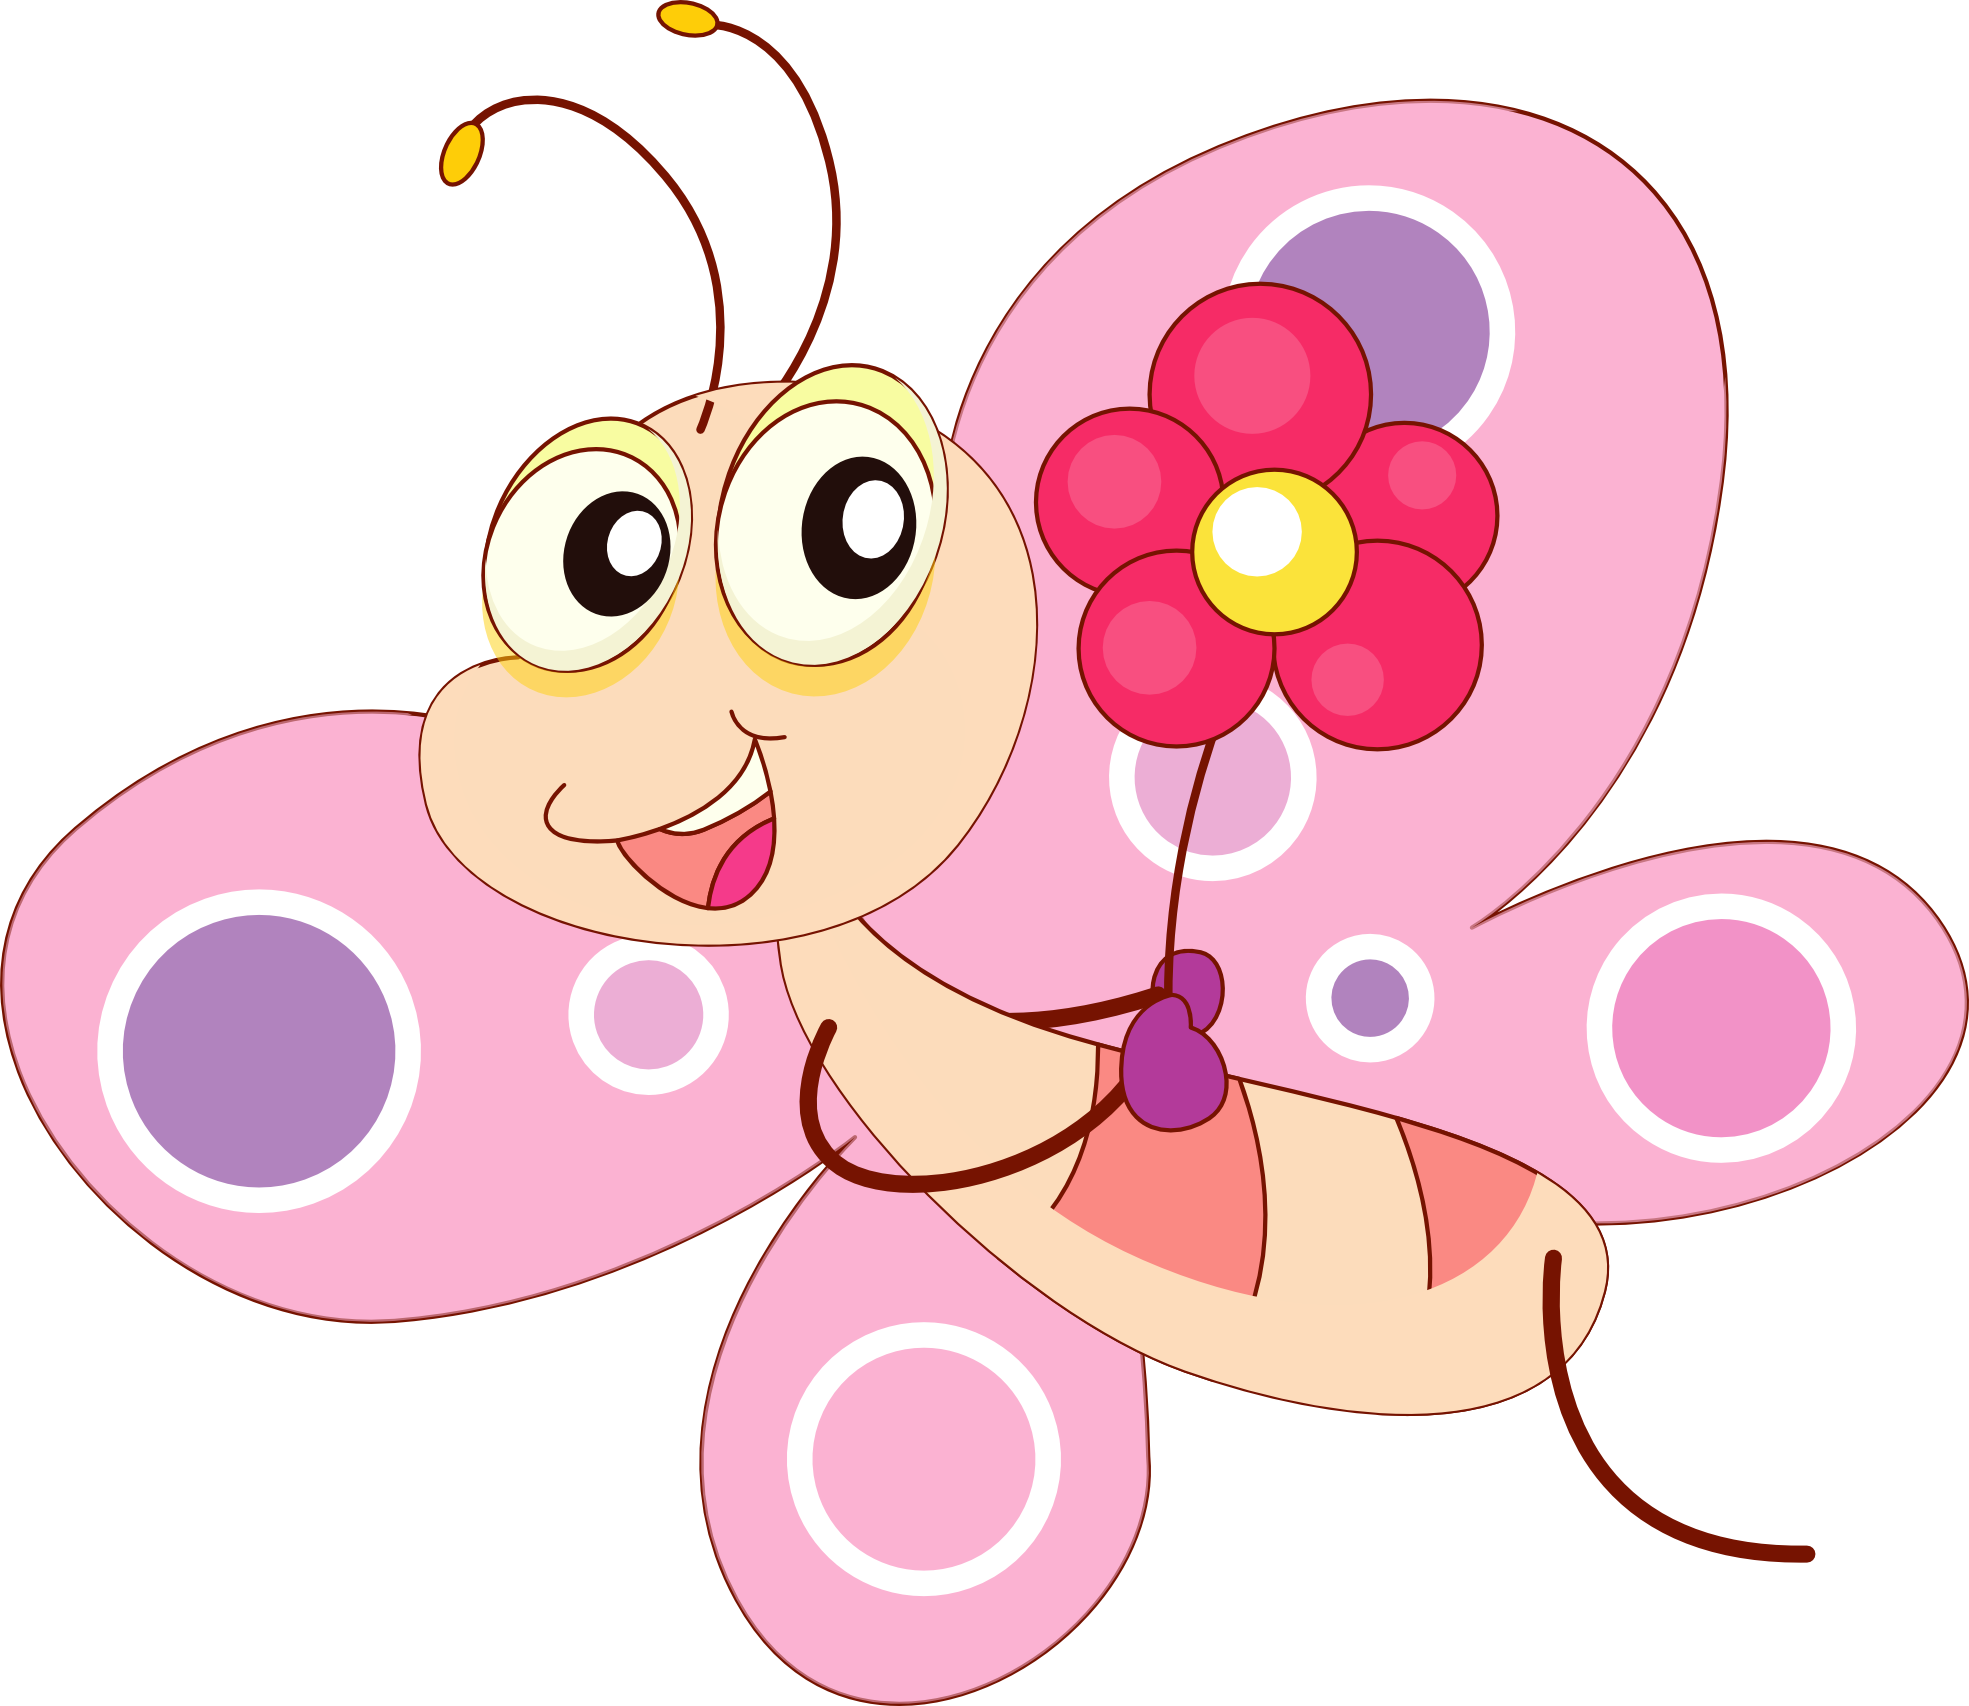 Clip Art: Cartoon Butterfly clipartist.net SVG - ClipArt Best ...